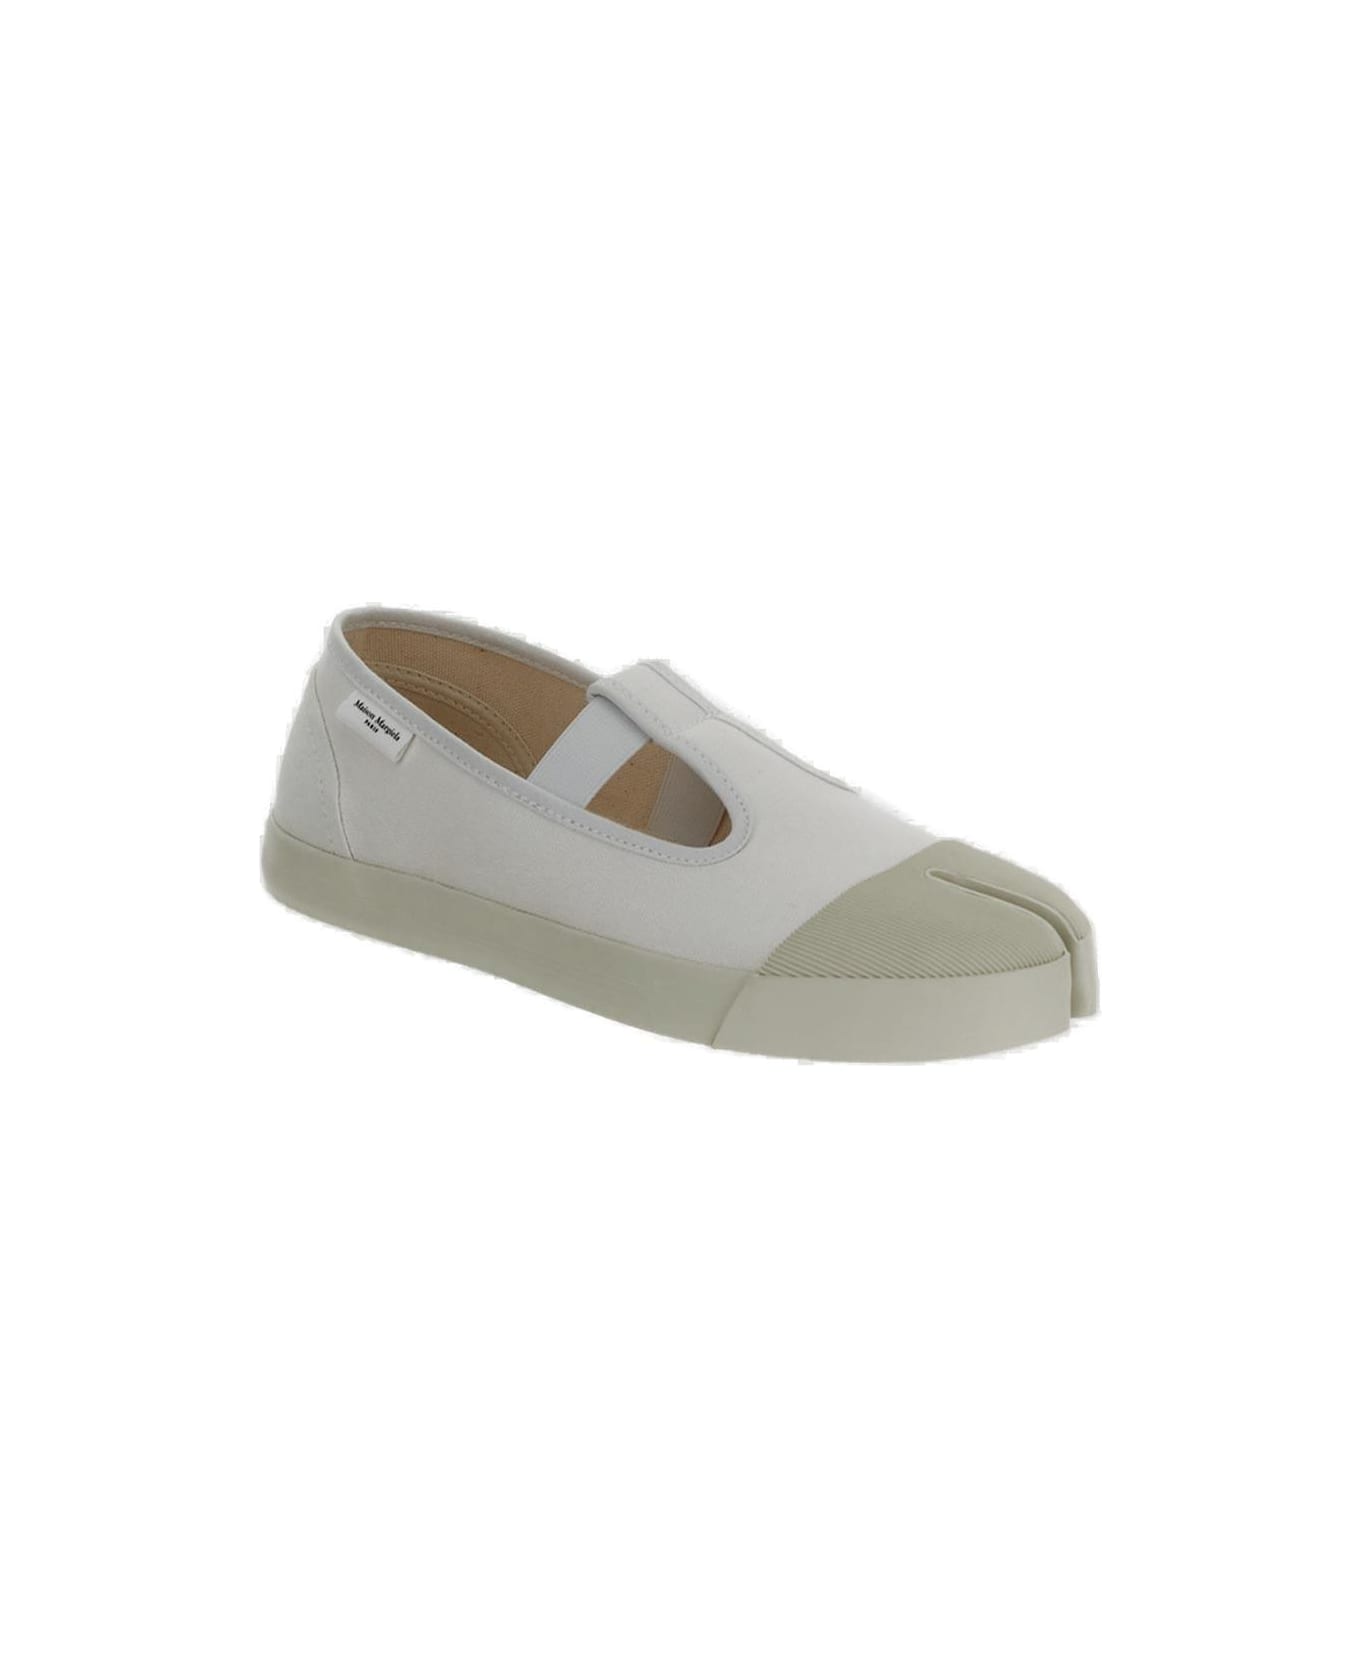 Maison Margiela On The Deck Tabi Mary Jane Shoes - WHITE